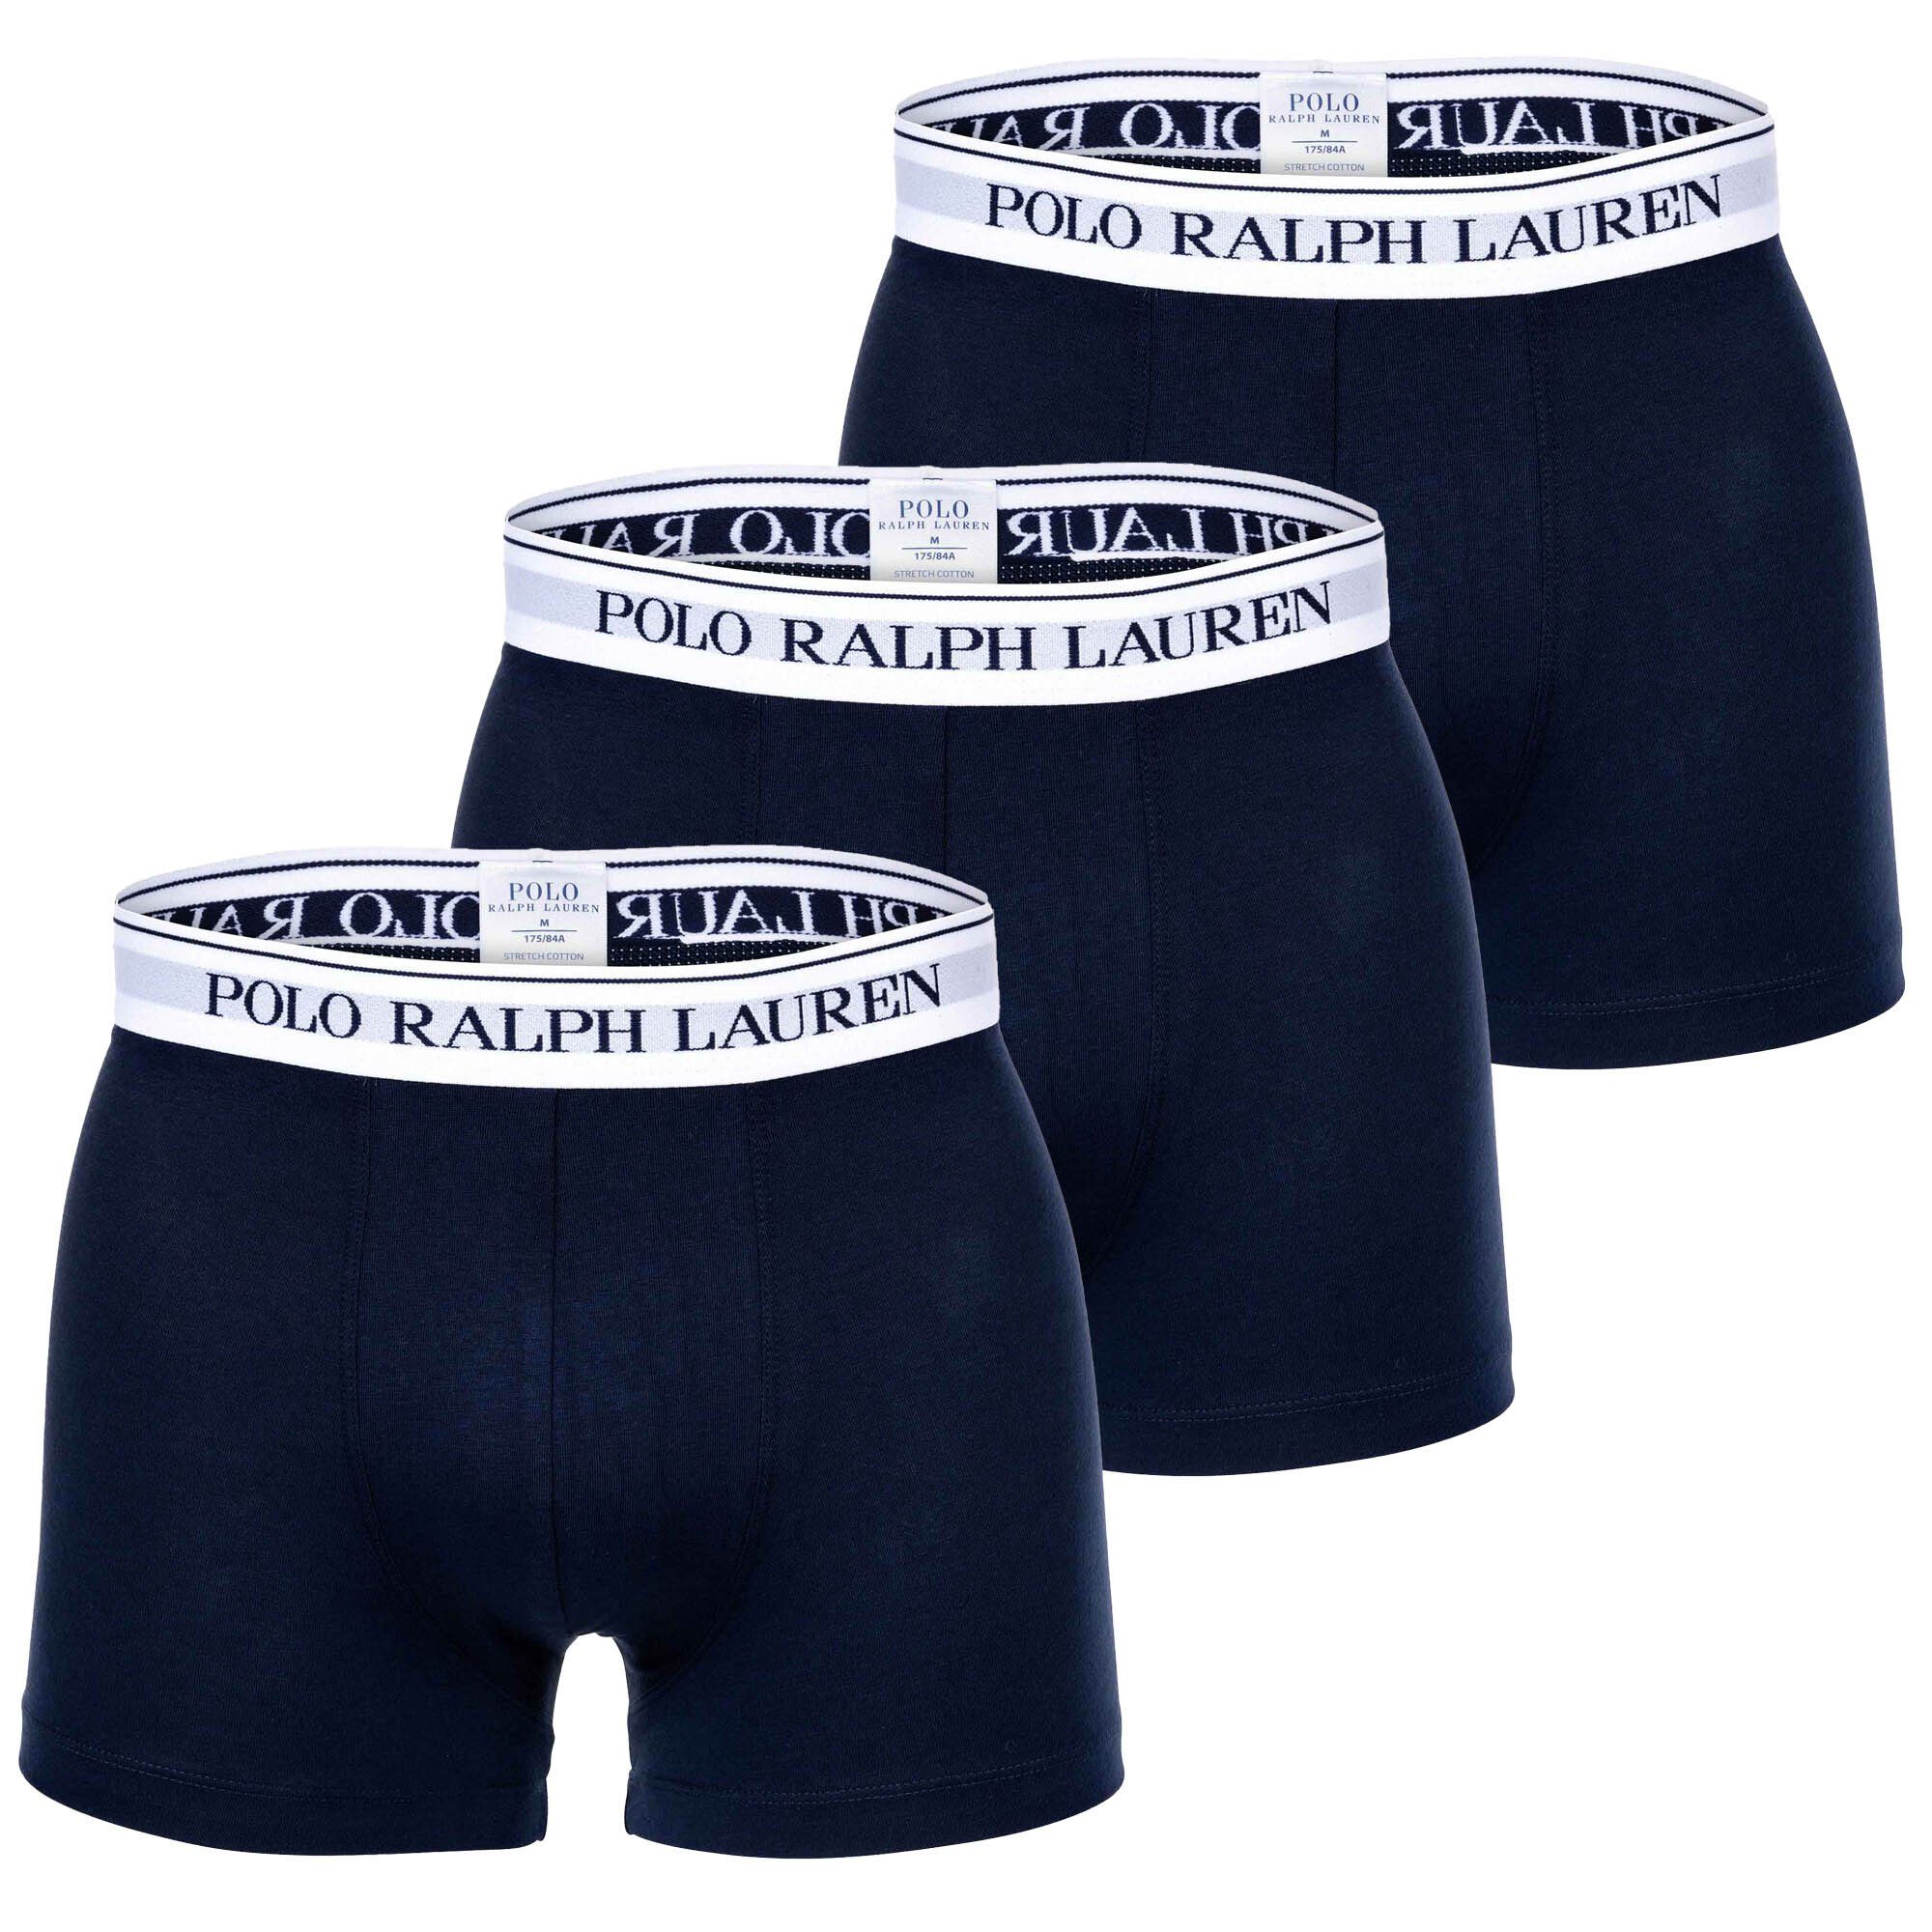 Polo Ralph Lauren Boxer Herren Boxer Shorts, 3er Pack - CLSSIC TRUNK-3 Dunkelblau